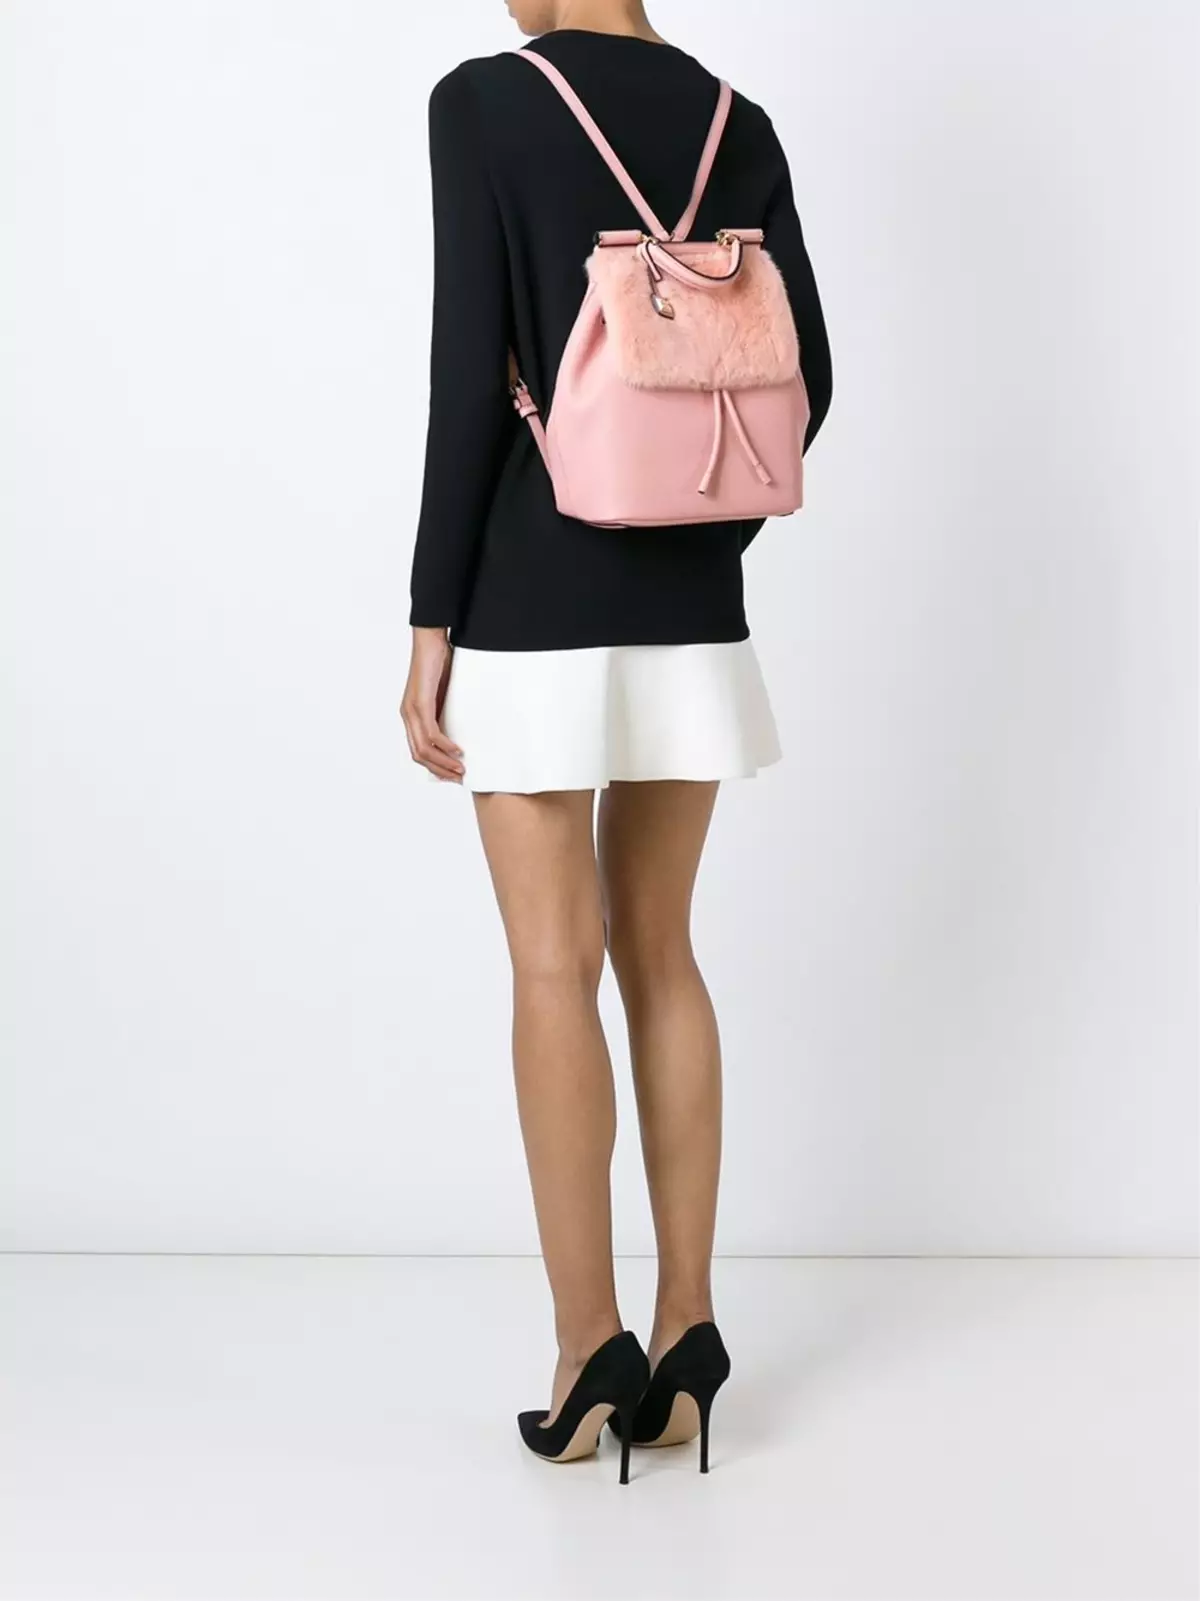 Dolce & Gabbana Backpacks: Perempuan dan Lelaki, Hitam dan Merah, Beg Kulit Beg dan Model Lain. Bagaimana untuk membezakan asal dari salinan itu? 2559_17